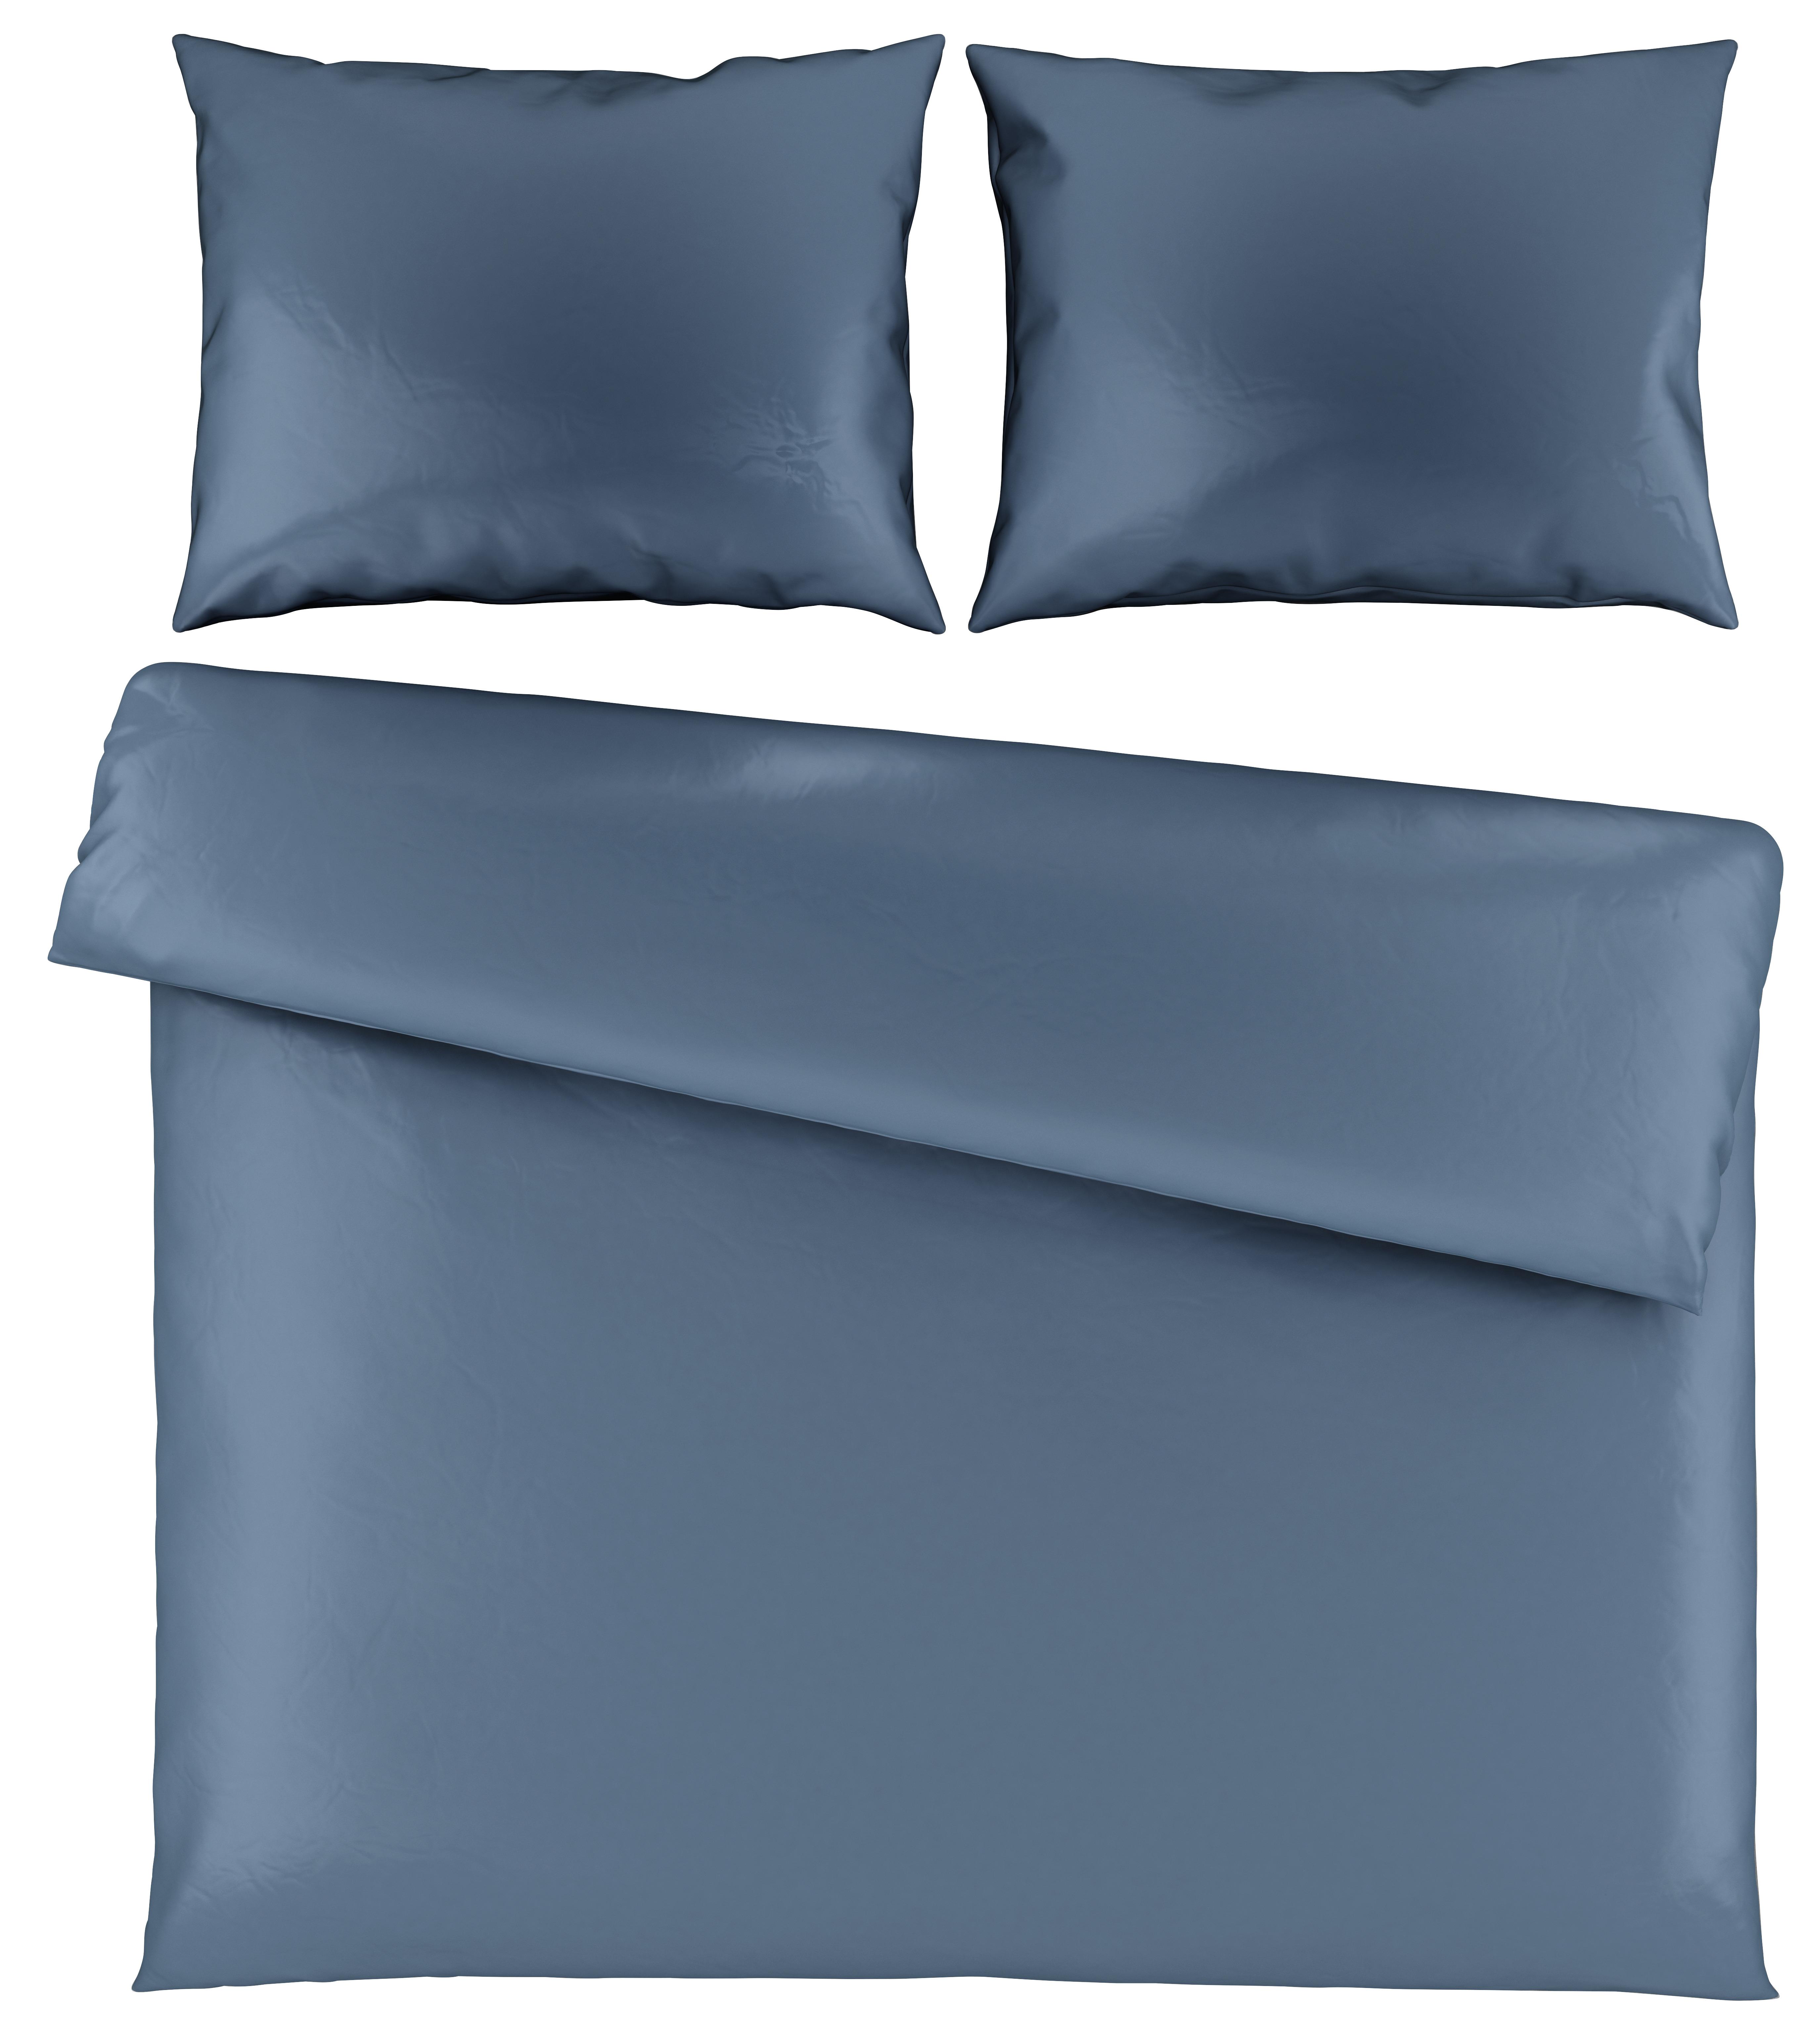 Posteľná Bielizeň Alex Uni Xxl, 200/220cm - modrá, Moderný, textil (200/220cm) - Premium Living